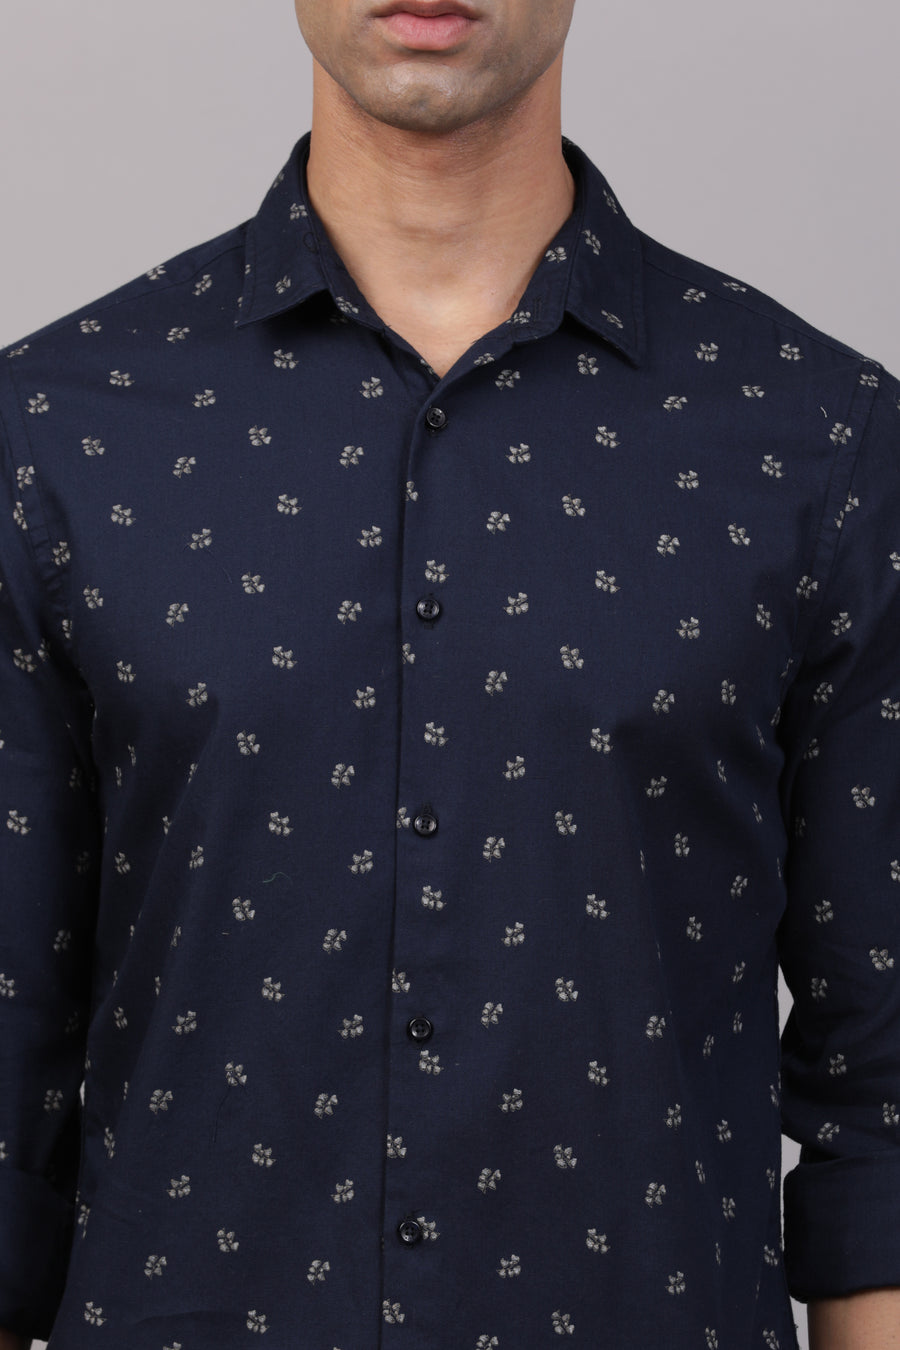 Heron - Micro Floral Printed Shirt - Navy